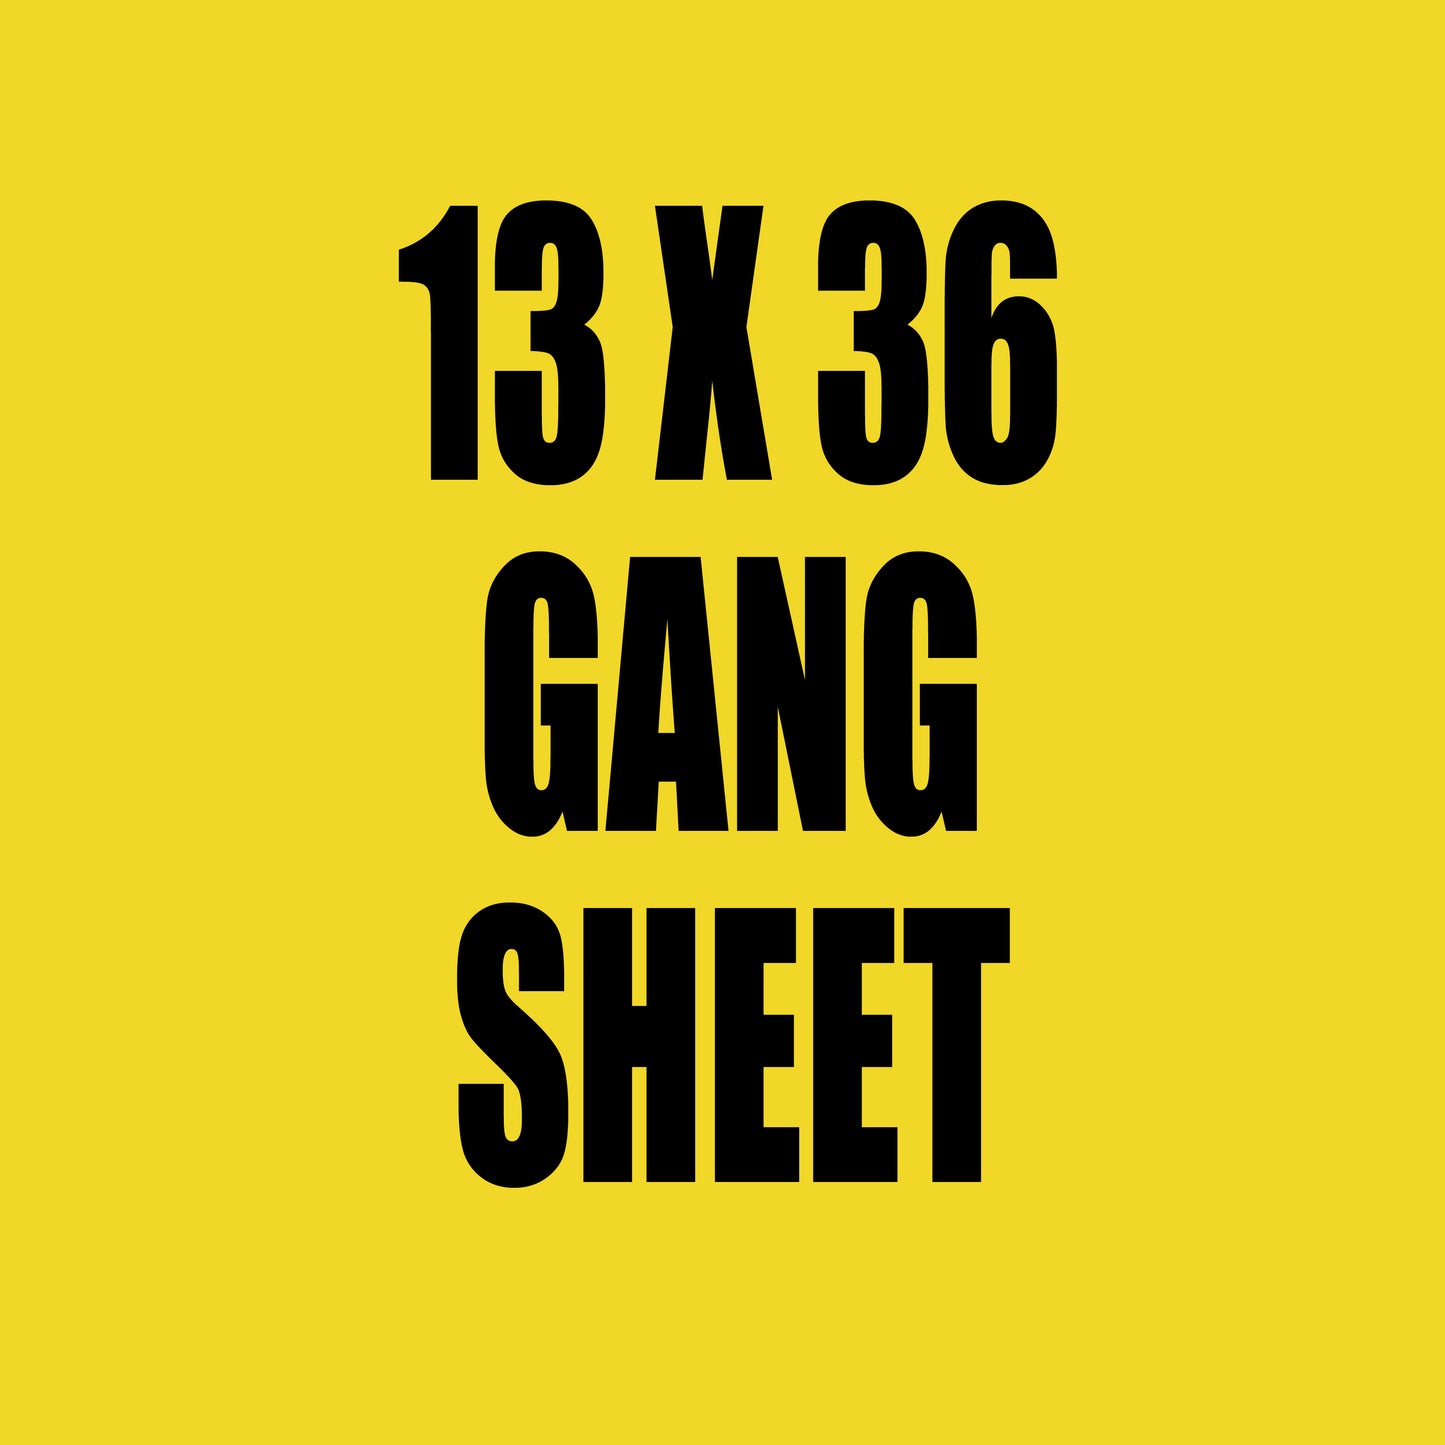 13x36 Gang Sheet